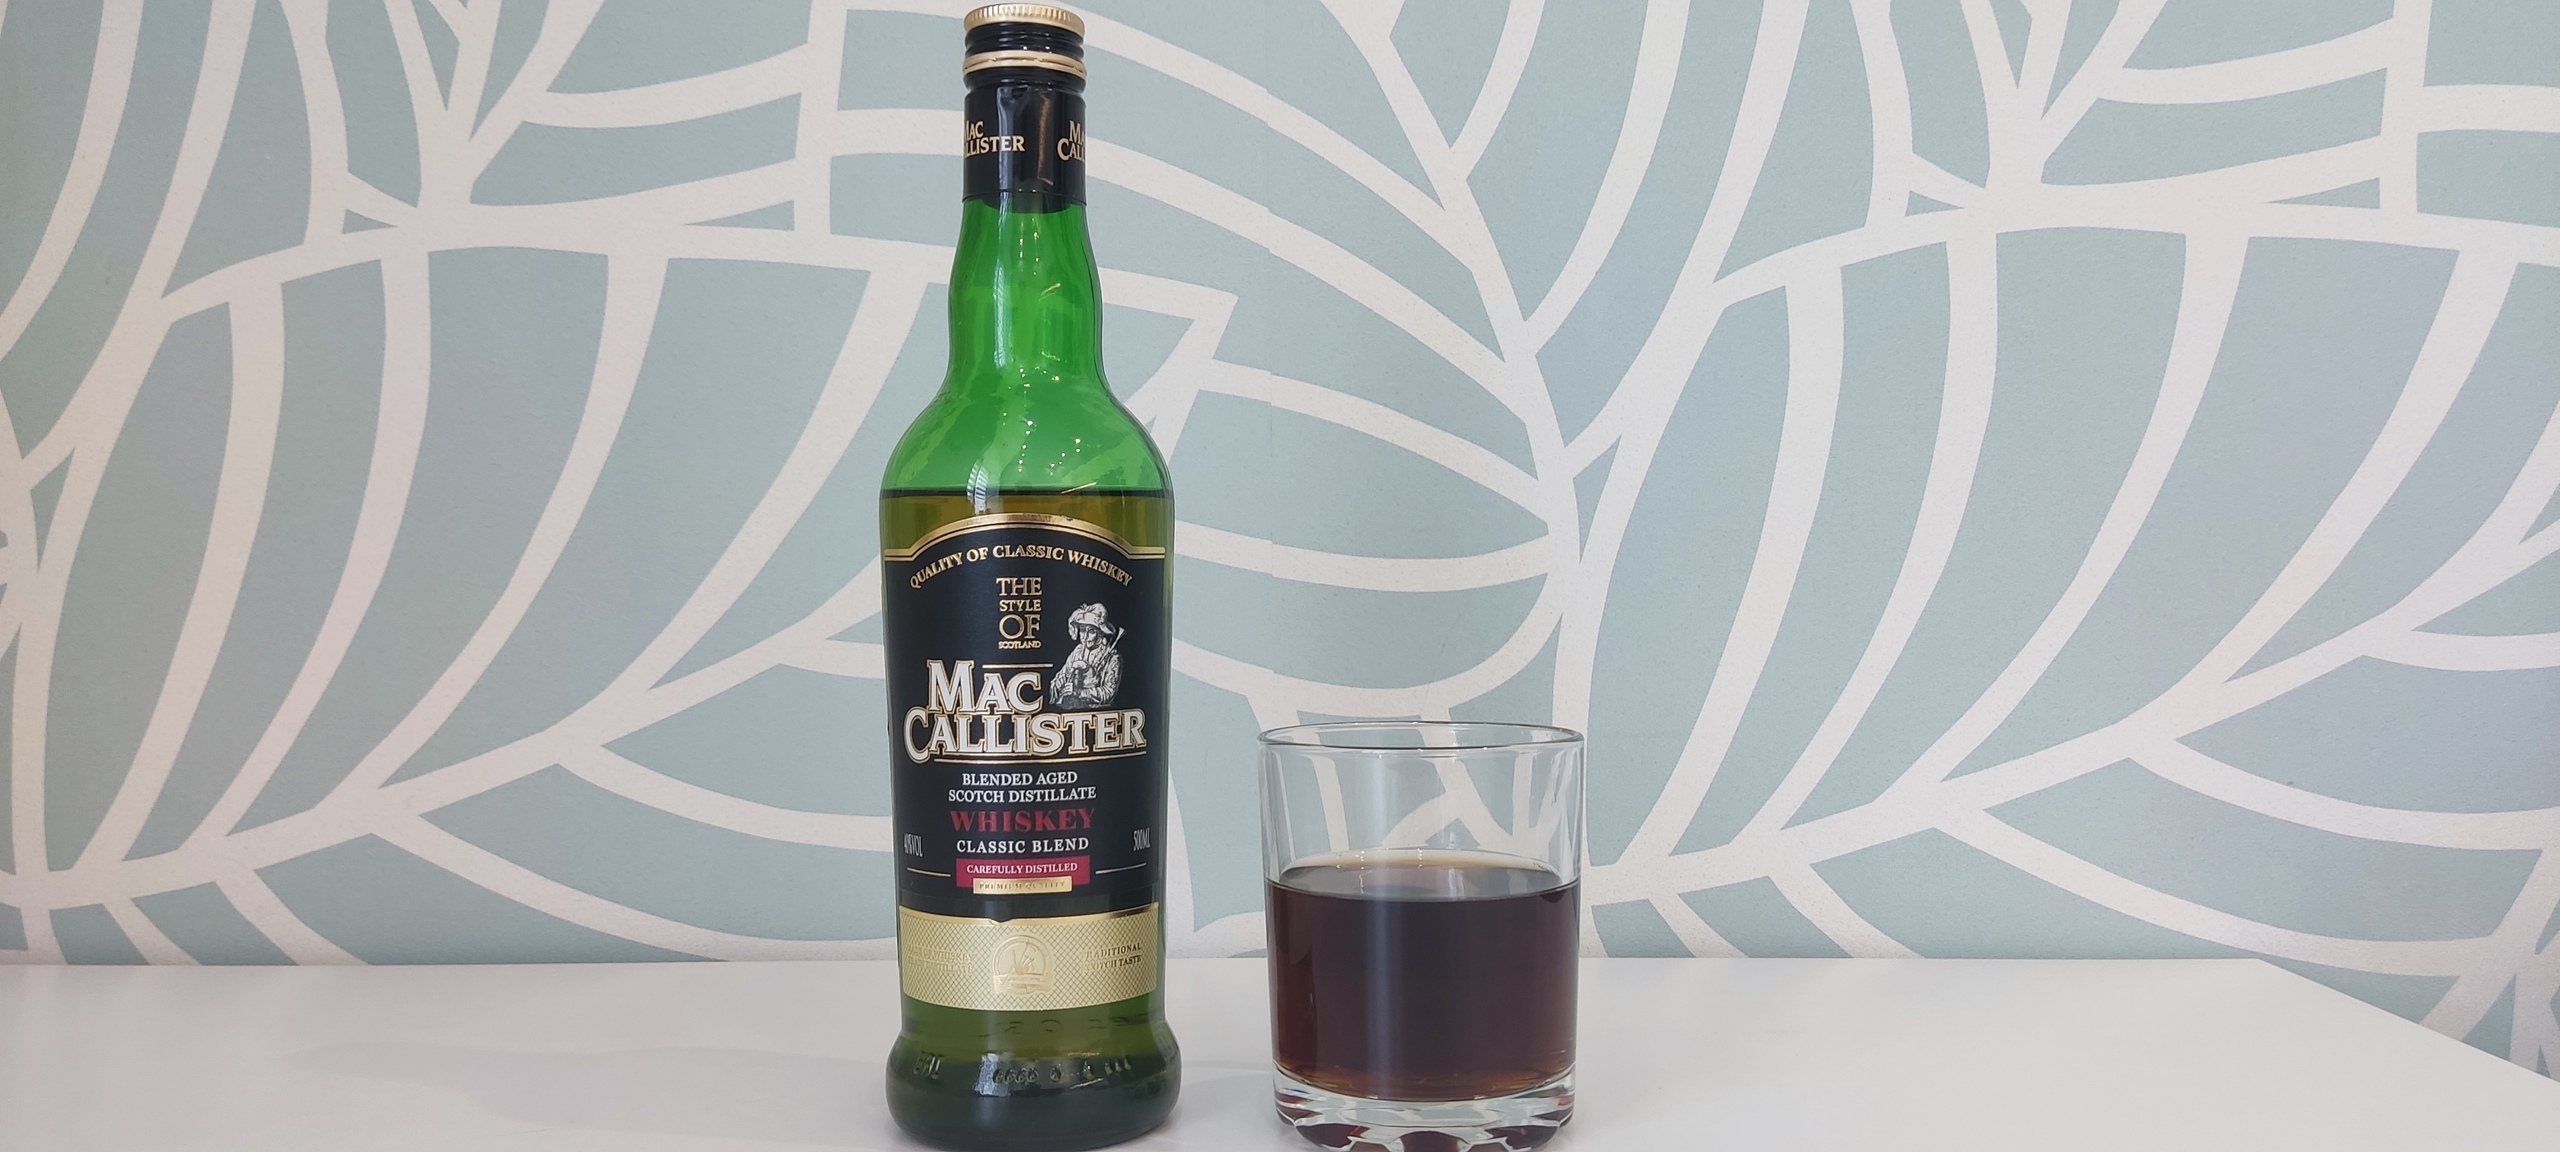 Виски на завтрак. Виски зерновой MACCALLISTER. Виски MACCALLISTER Classic Blend 0.5. Red Hackle виски. Виски зерновой Mac Callister.